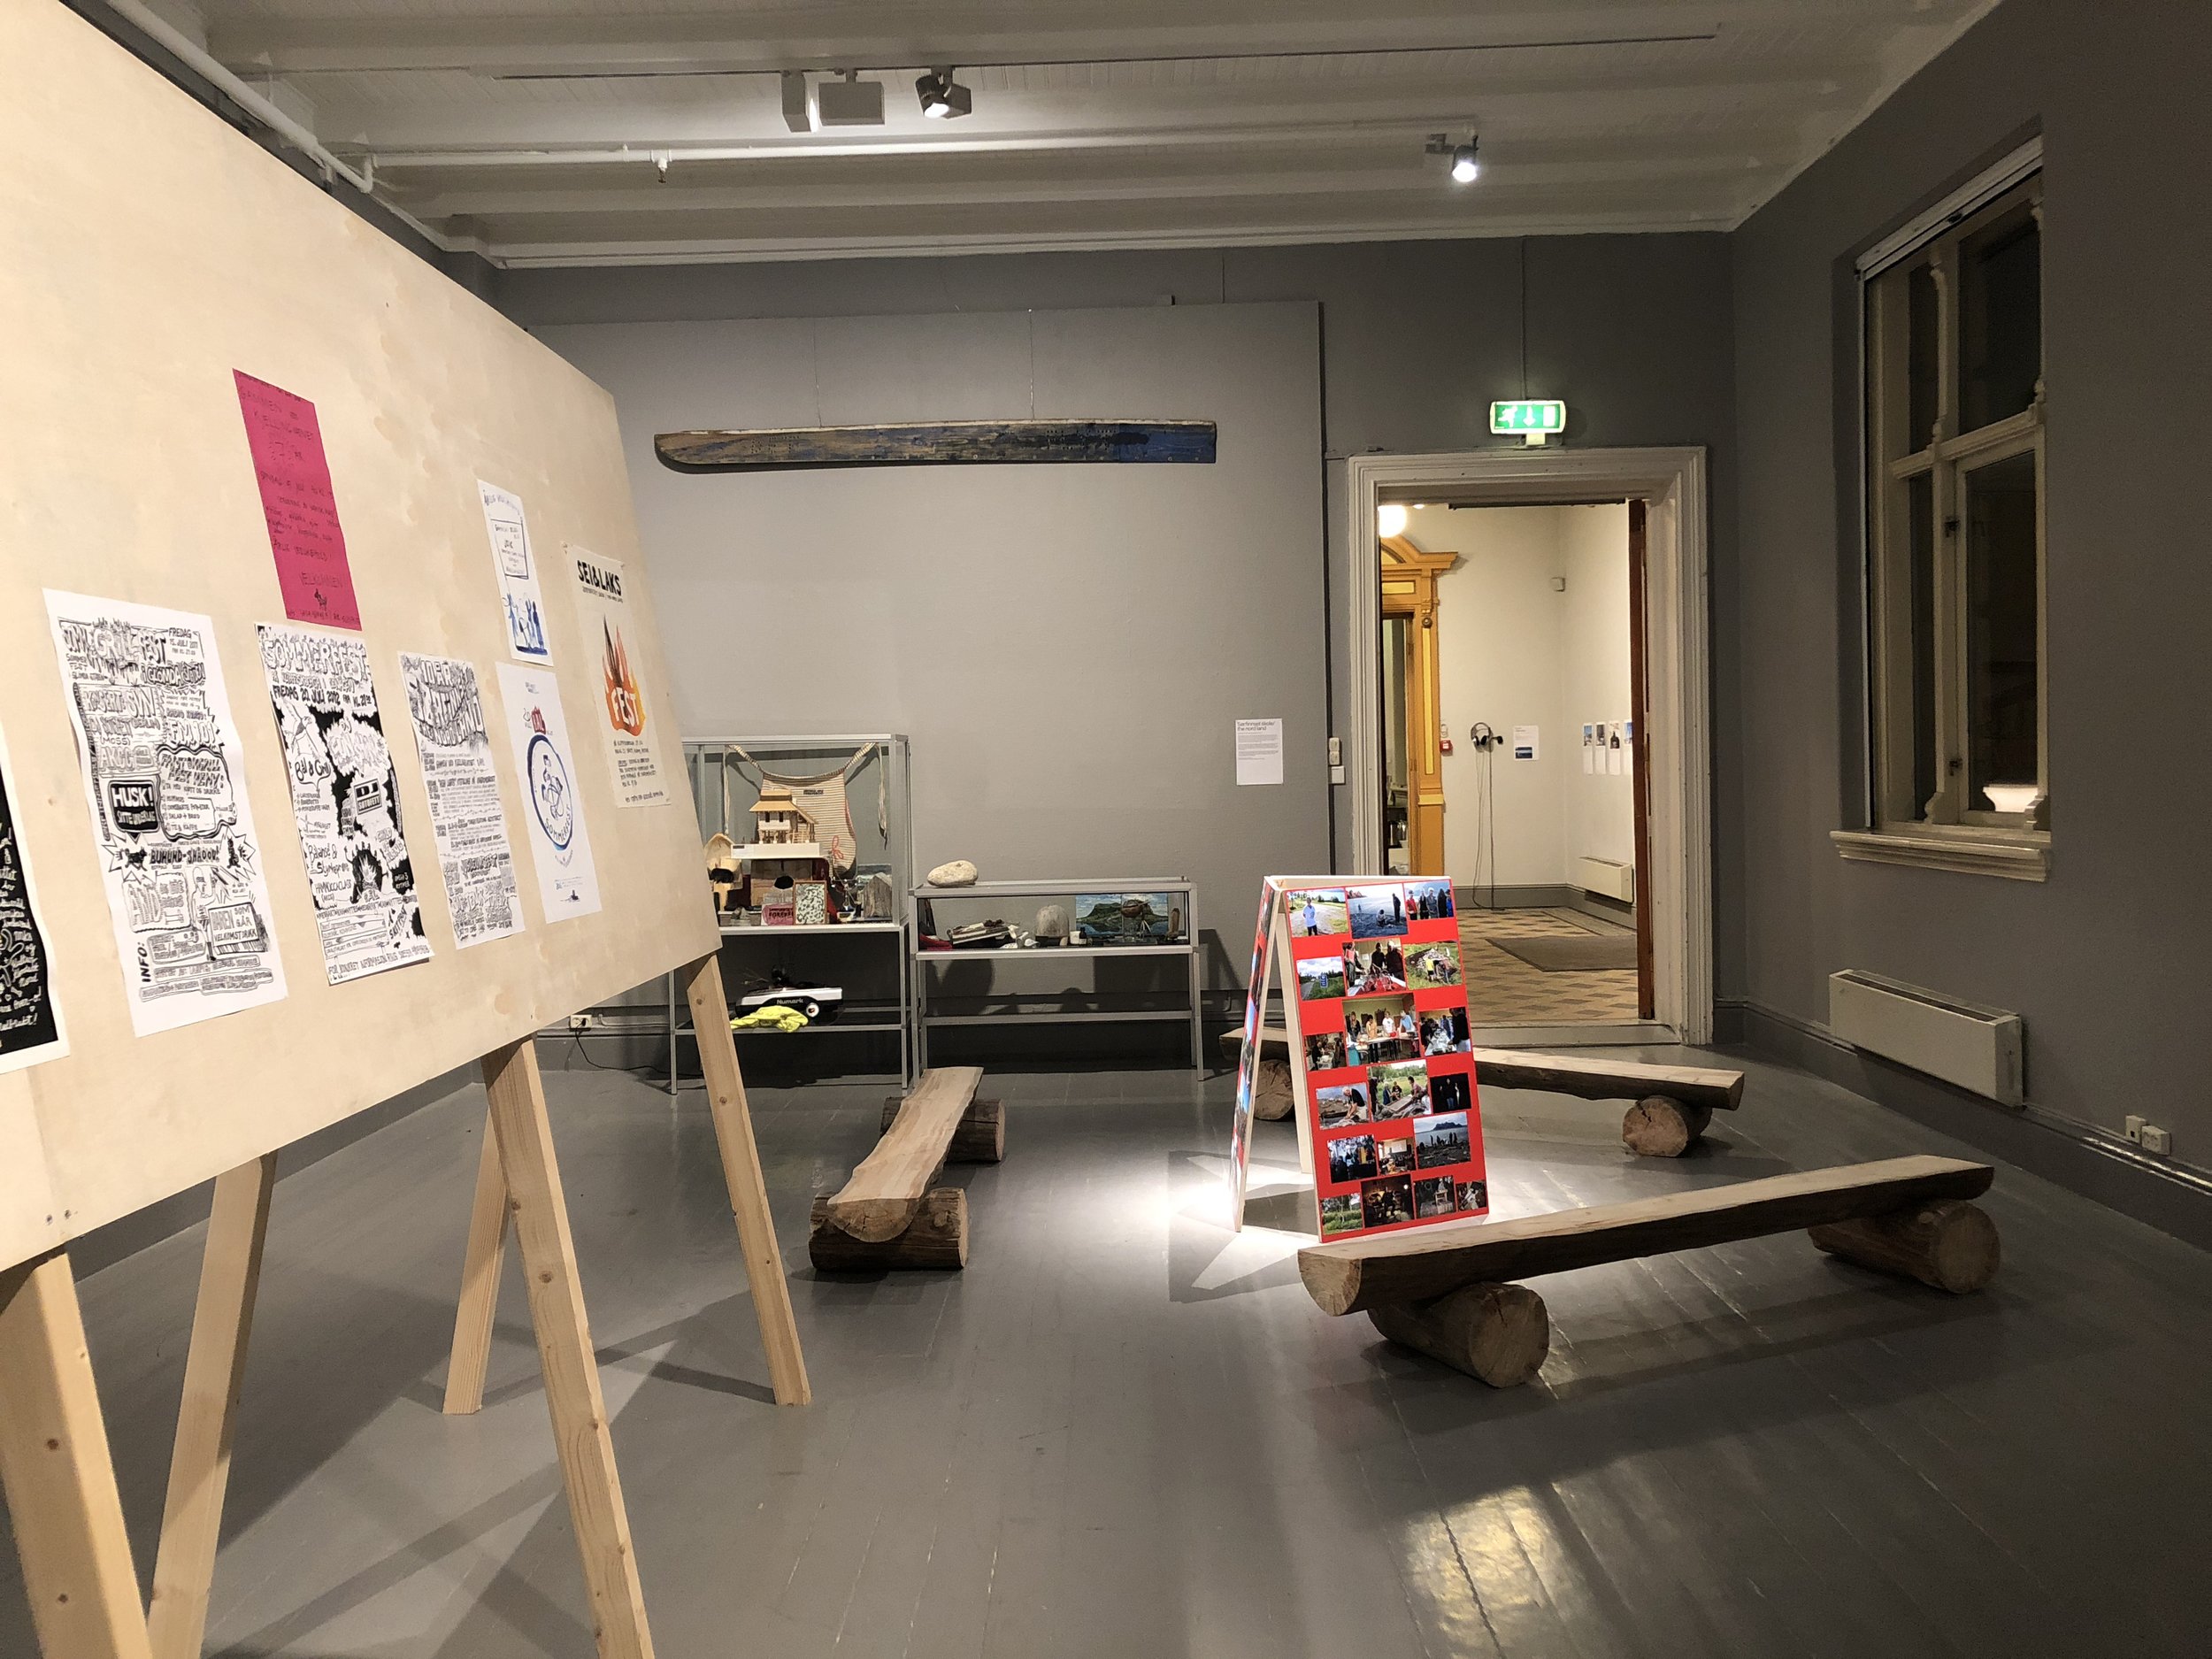  Dokumentasjon av prosjektet  Sørfinnset Skole / The Nord Land (pågående)  av Søssa Jørgensen og Geir Tore Holm. Foto: Hilde Sørstrøm 